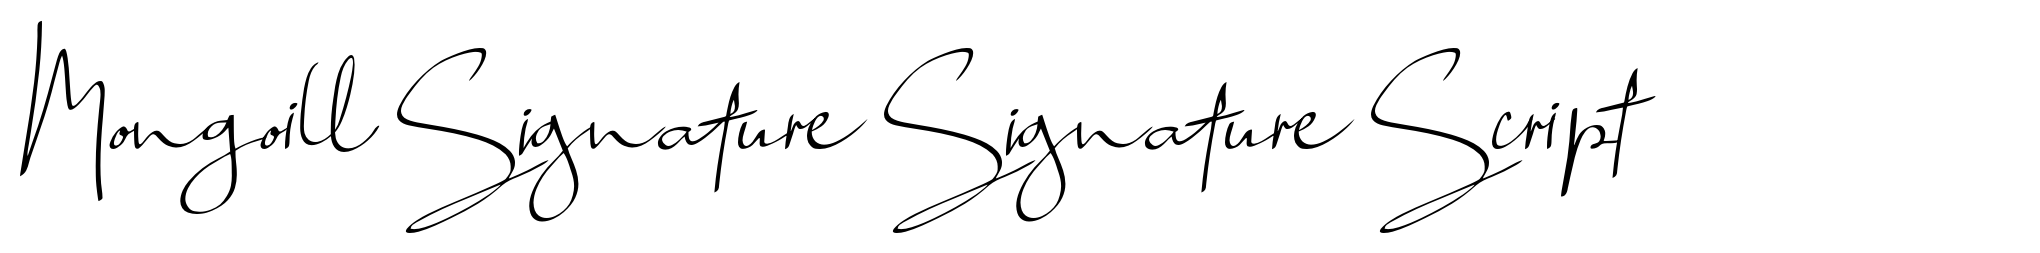 Mongoill Signature Signature Script image